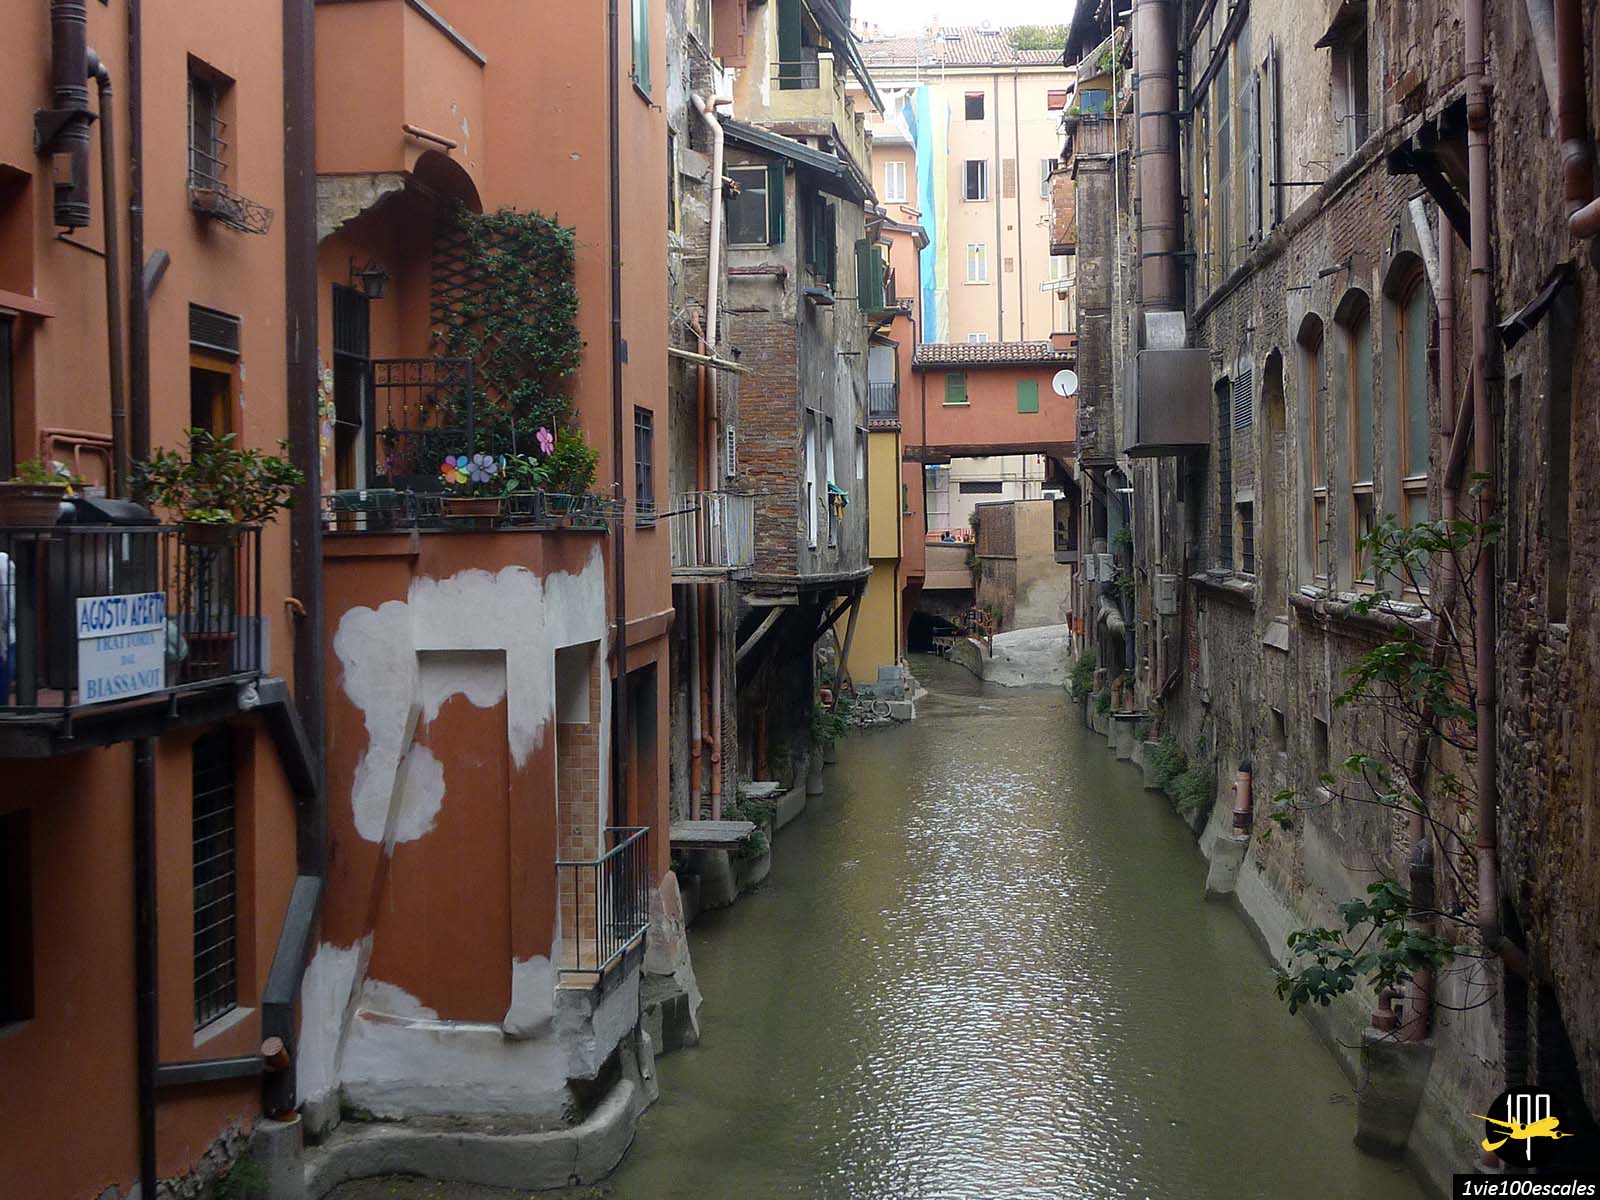 Un canal étroit dans une ville.